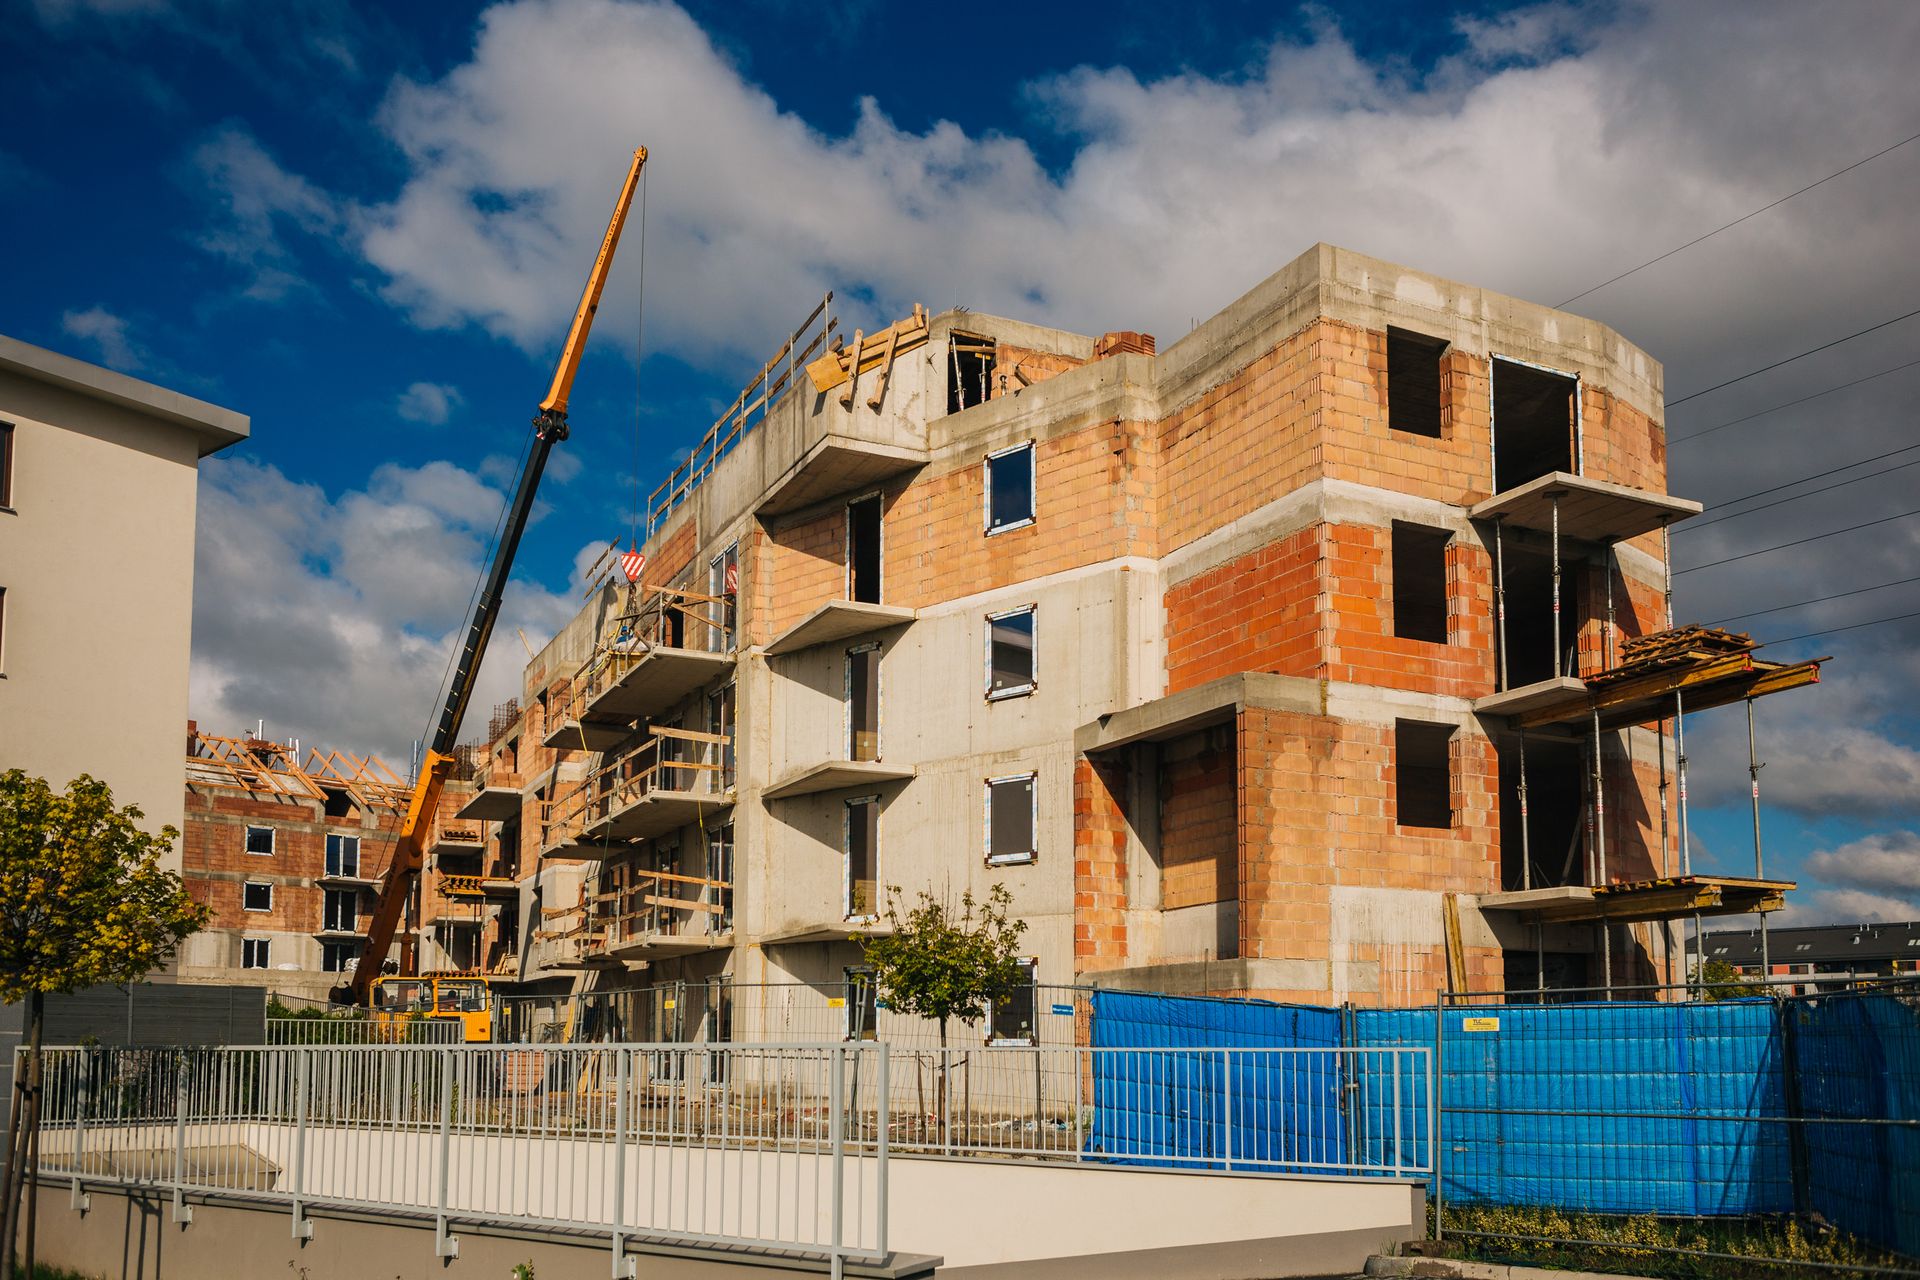  Rząd bierze się za budowę mieszkań. Co trzeba wiedzieć o programie Mieszkanie Plus?